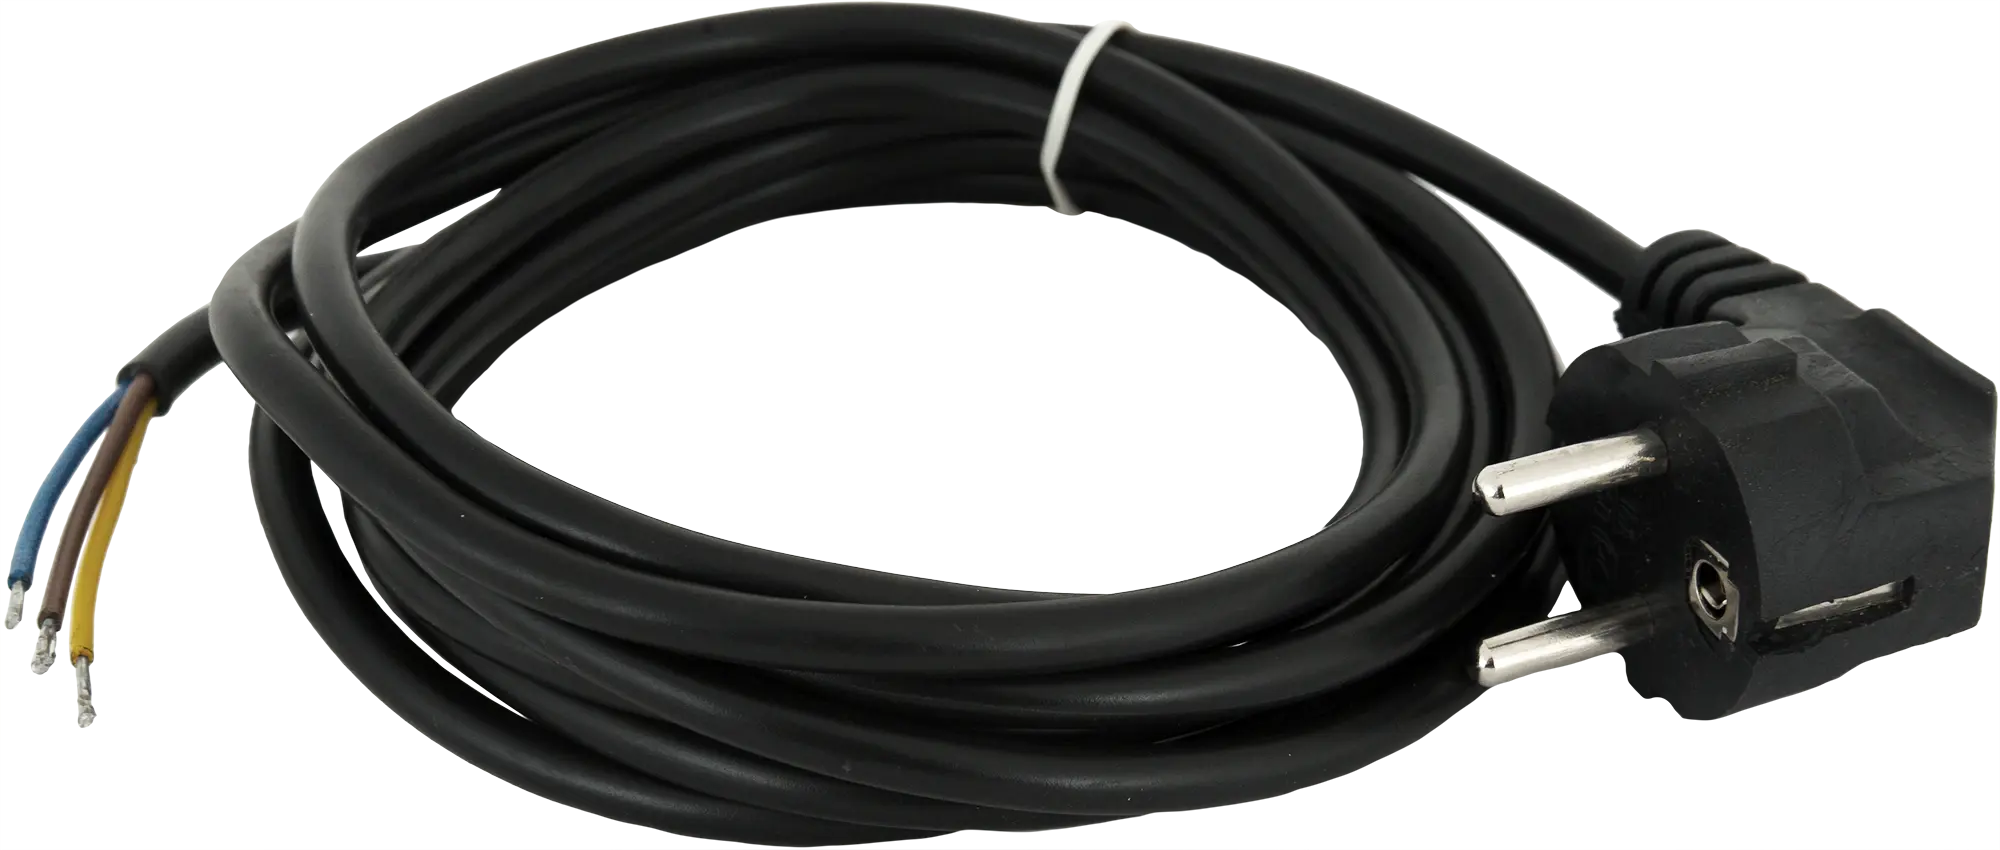 Шнур сетевой с заземлением 10 A 1.5 м цвет чёрный шнур сетевой с заземлением 10 a 3 м чёрный